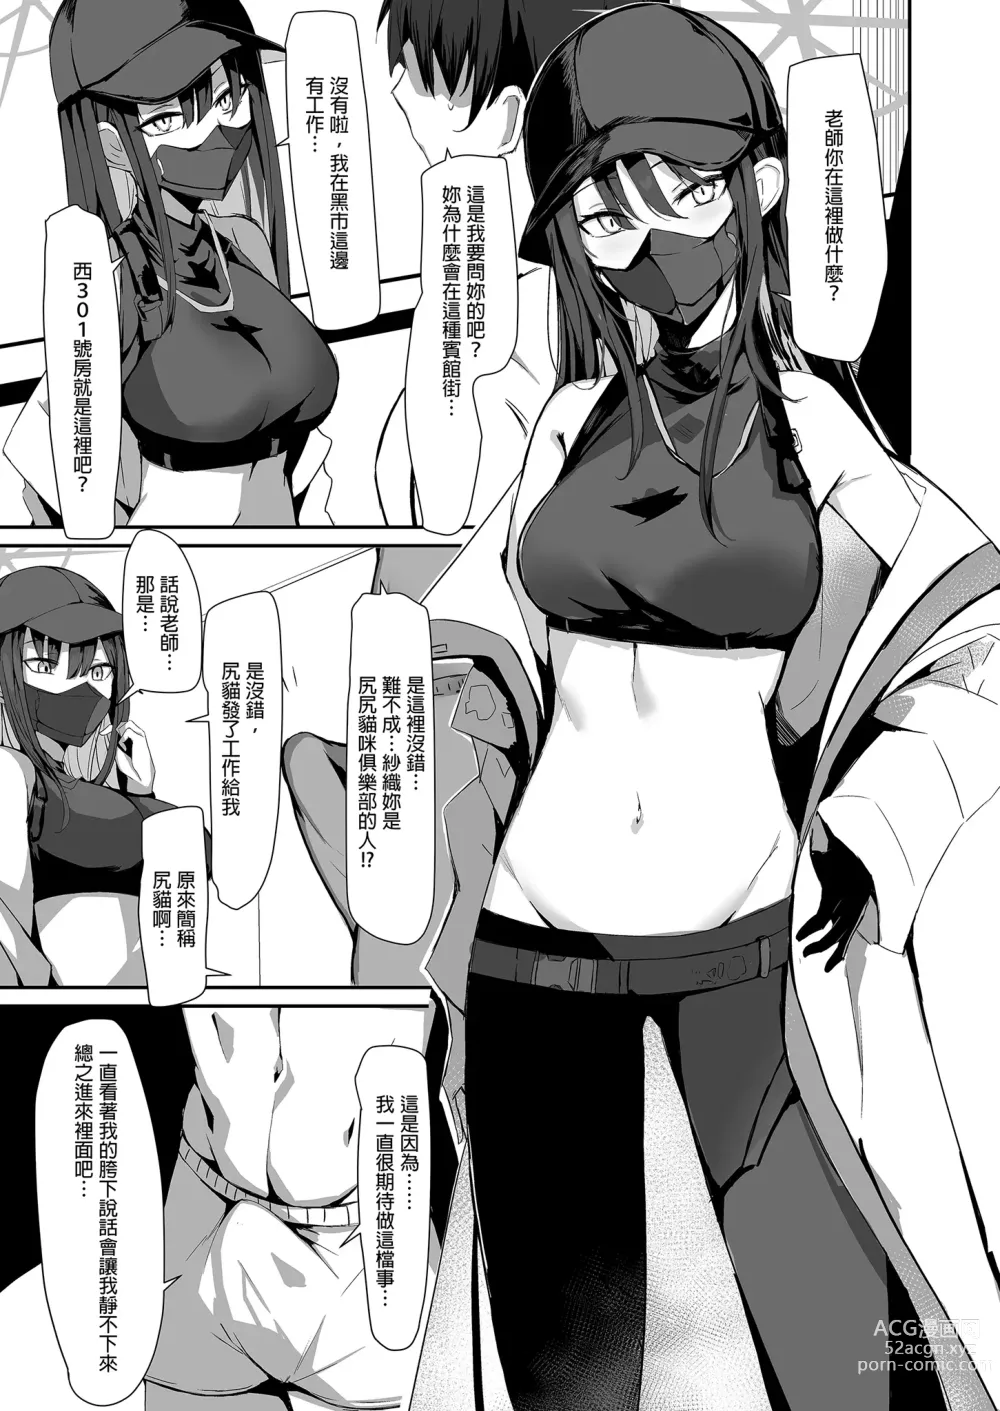 Page 7 of doujinshi 叫了外送妹來的卻是沙織於是便將計就計1 (decensored)